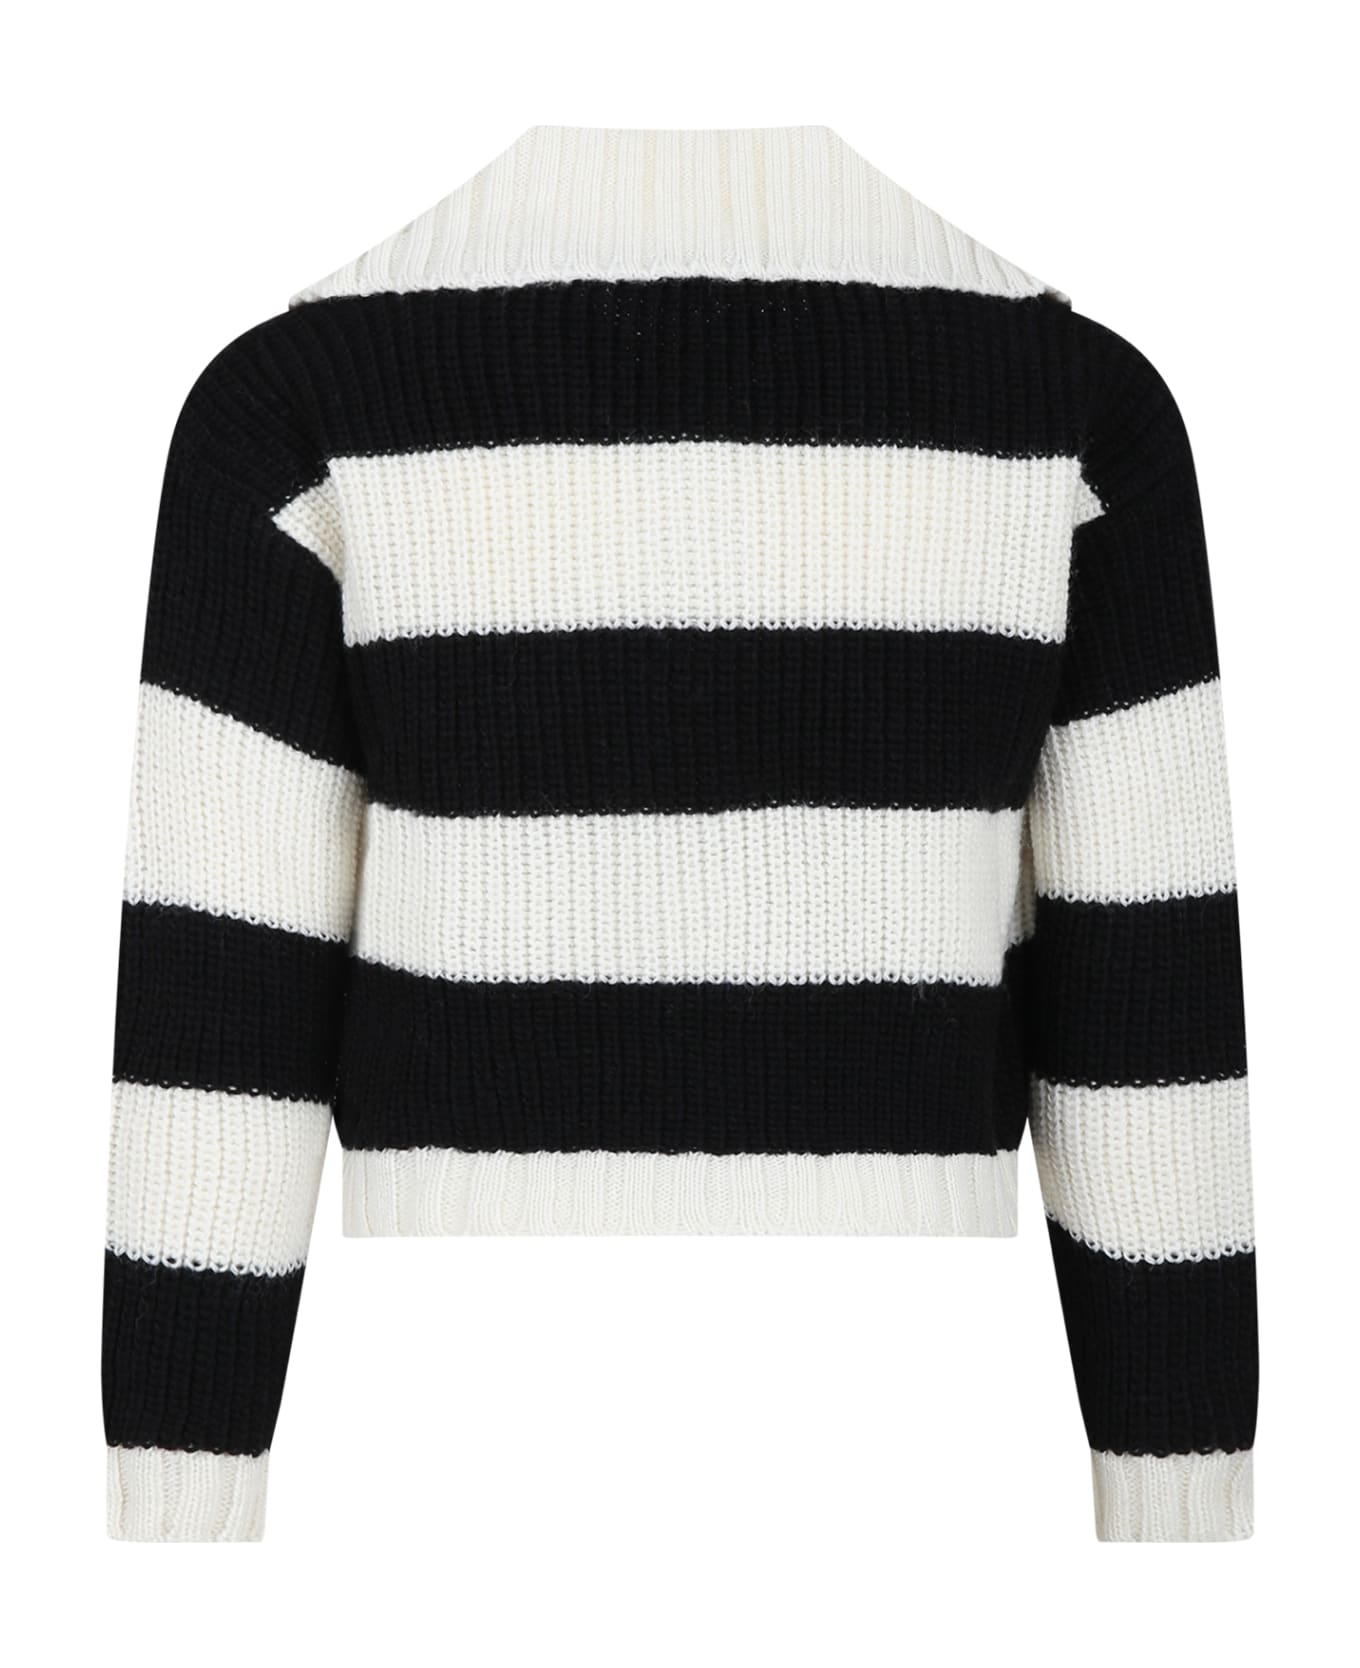 MSGM Black Sweater For Girl With Logo - Multicolor ニットウェア＆スウェットシャツ